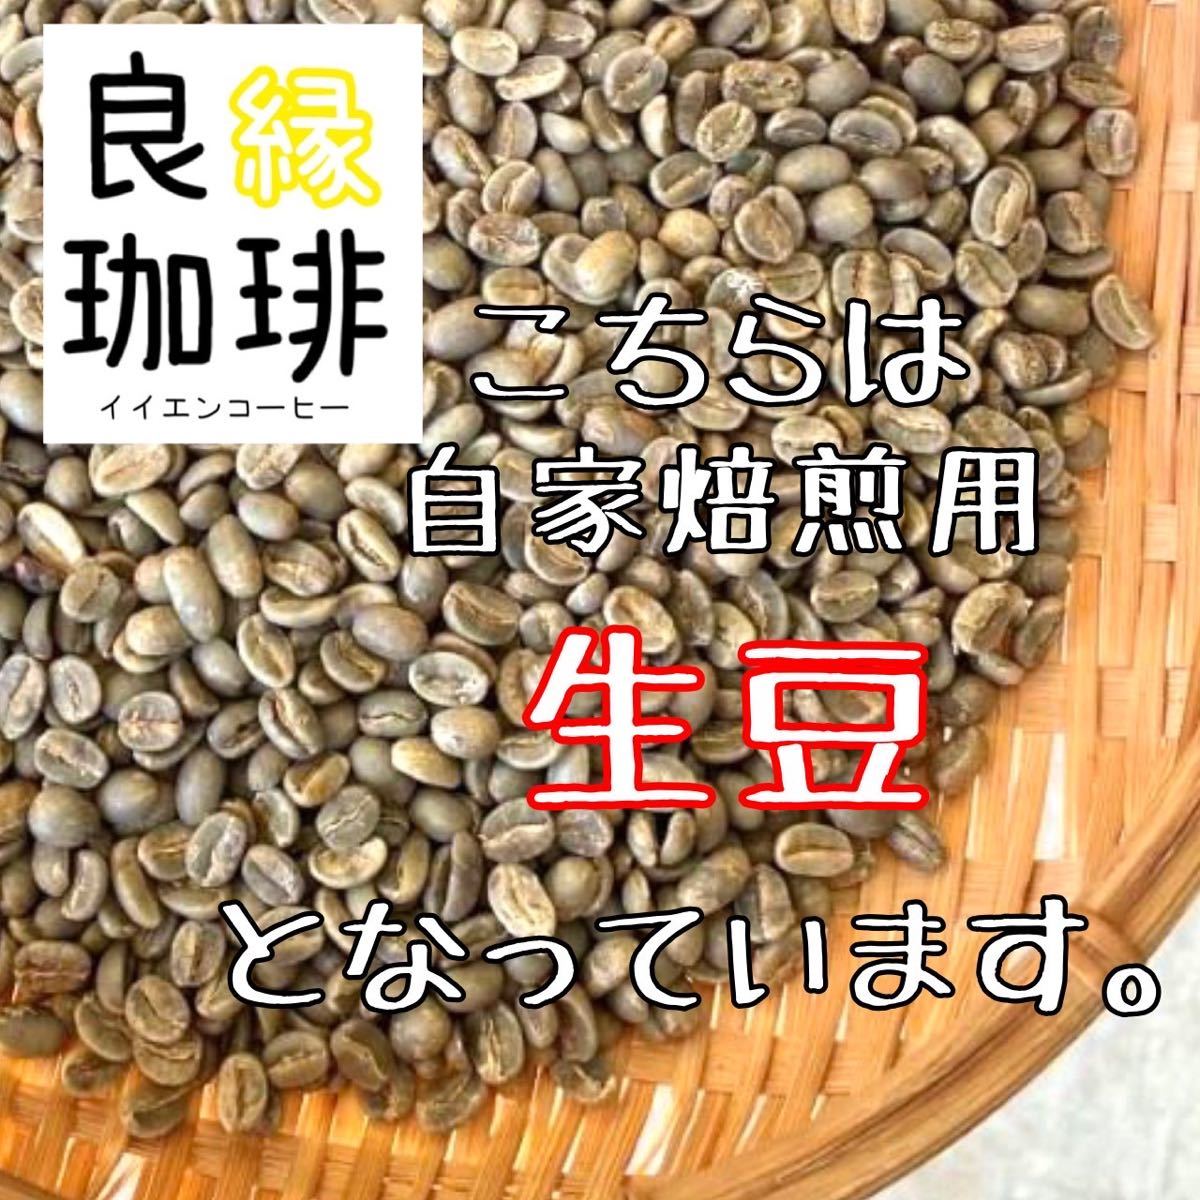 生豆 ブラジル クィーンショコラ Qグレード 800g コーヒー豆 珈琲豆 coffee green beans